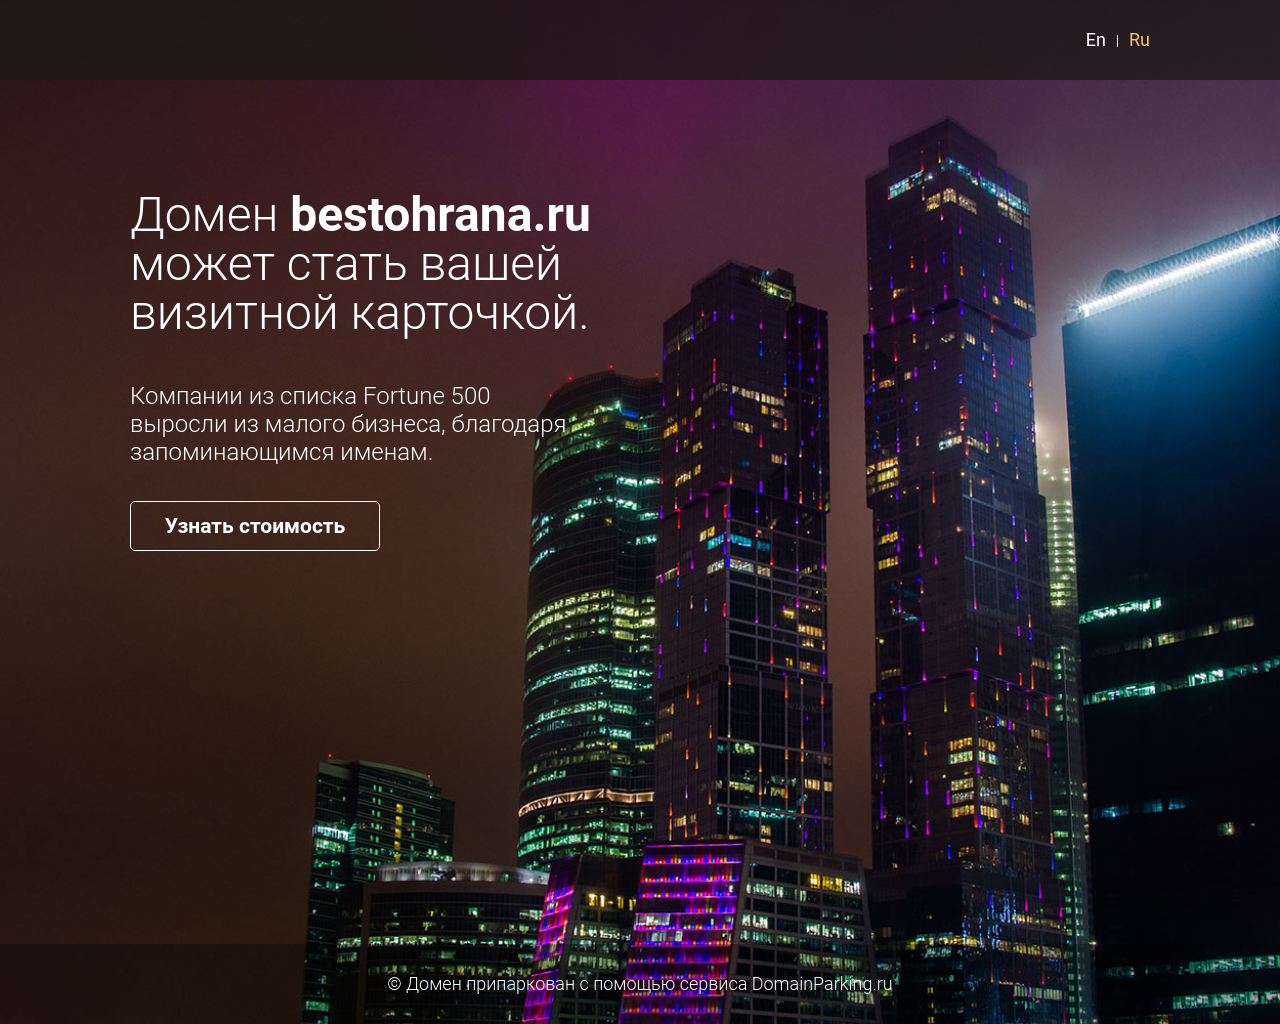 Изображение сайта bestohrana.ru в разрешении 1280x1024